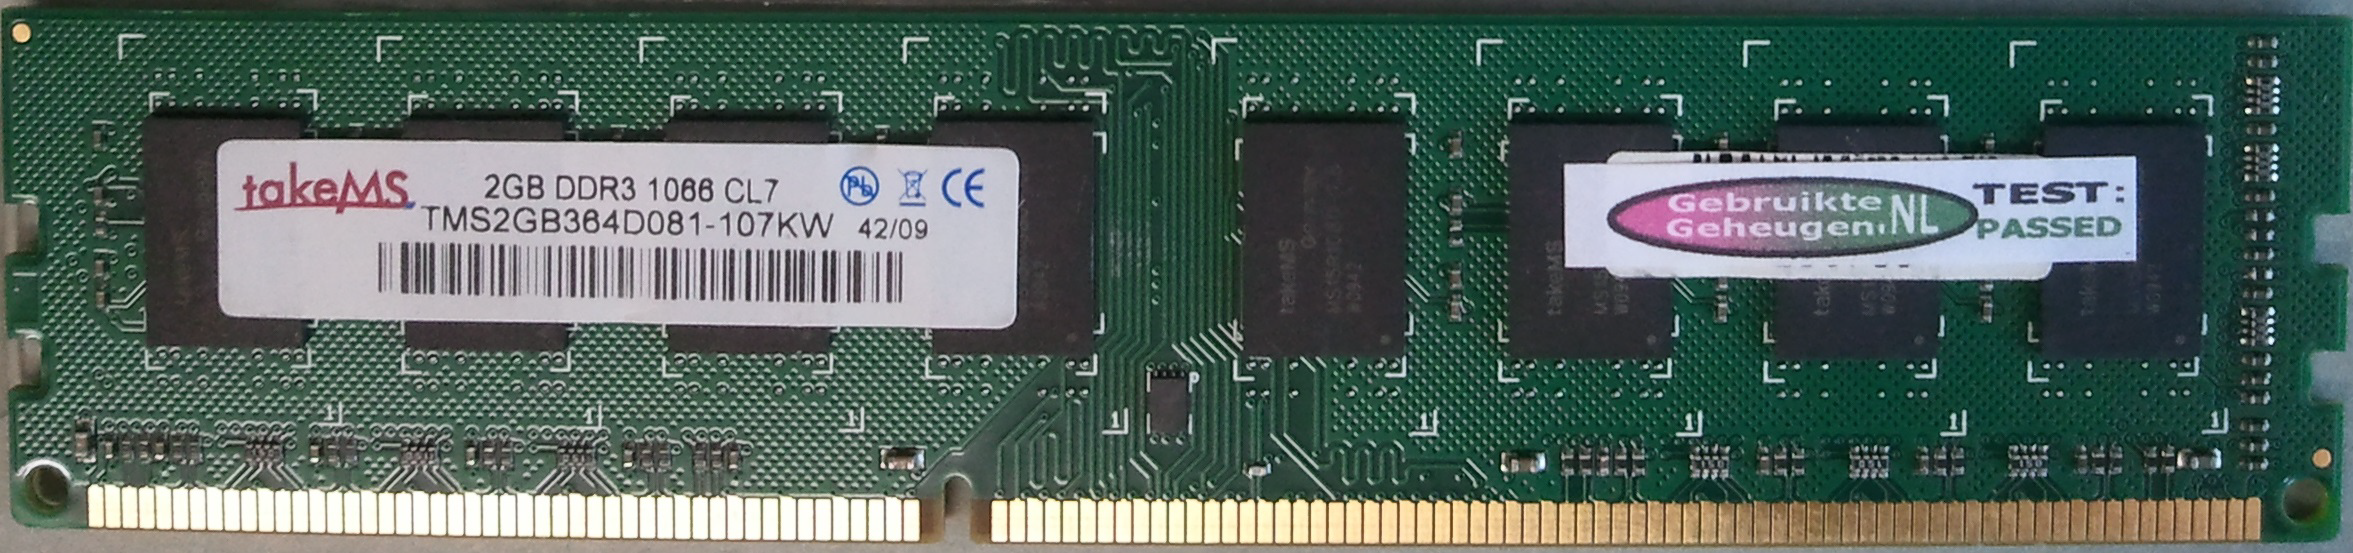 2GB DDR3 1066 CL7